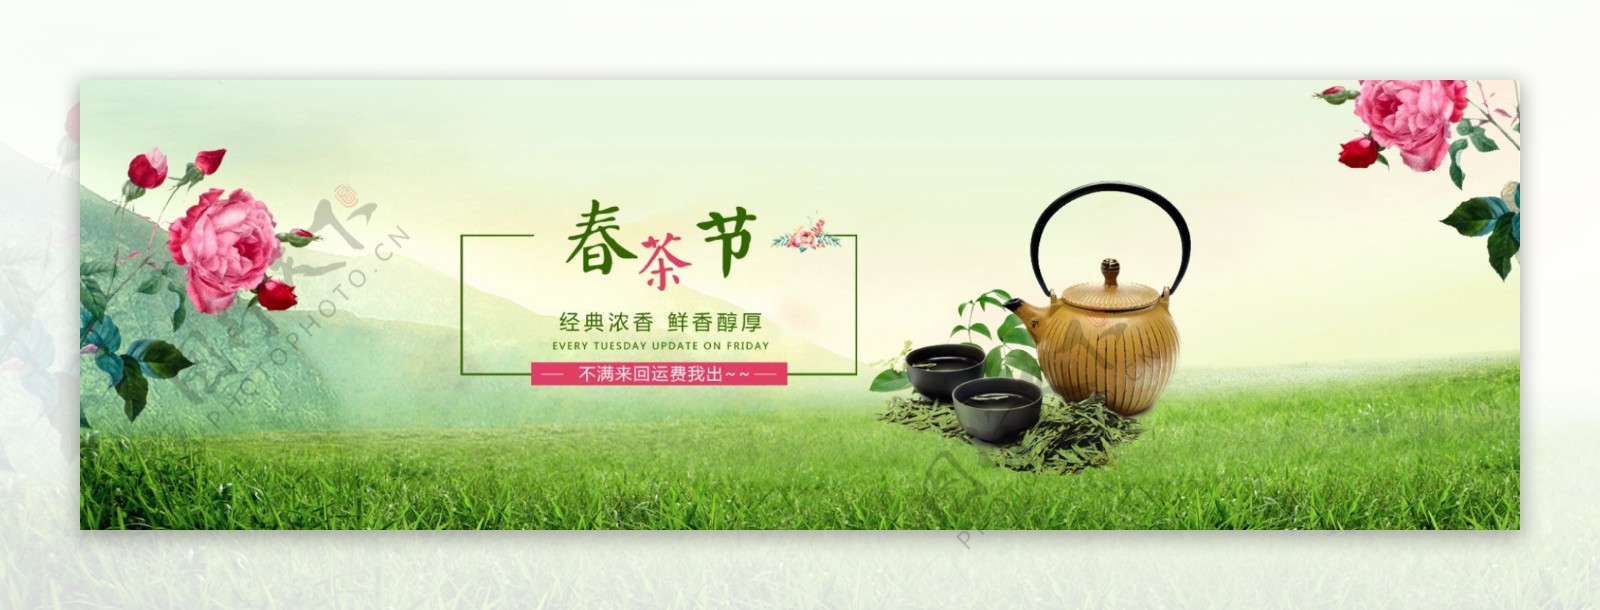 绿色唯美春季春茶节手绘花朵